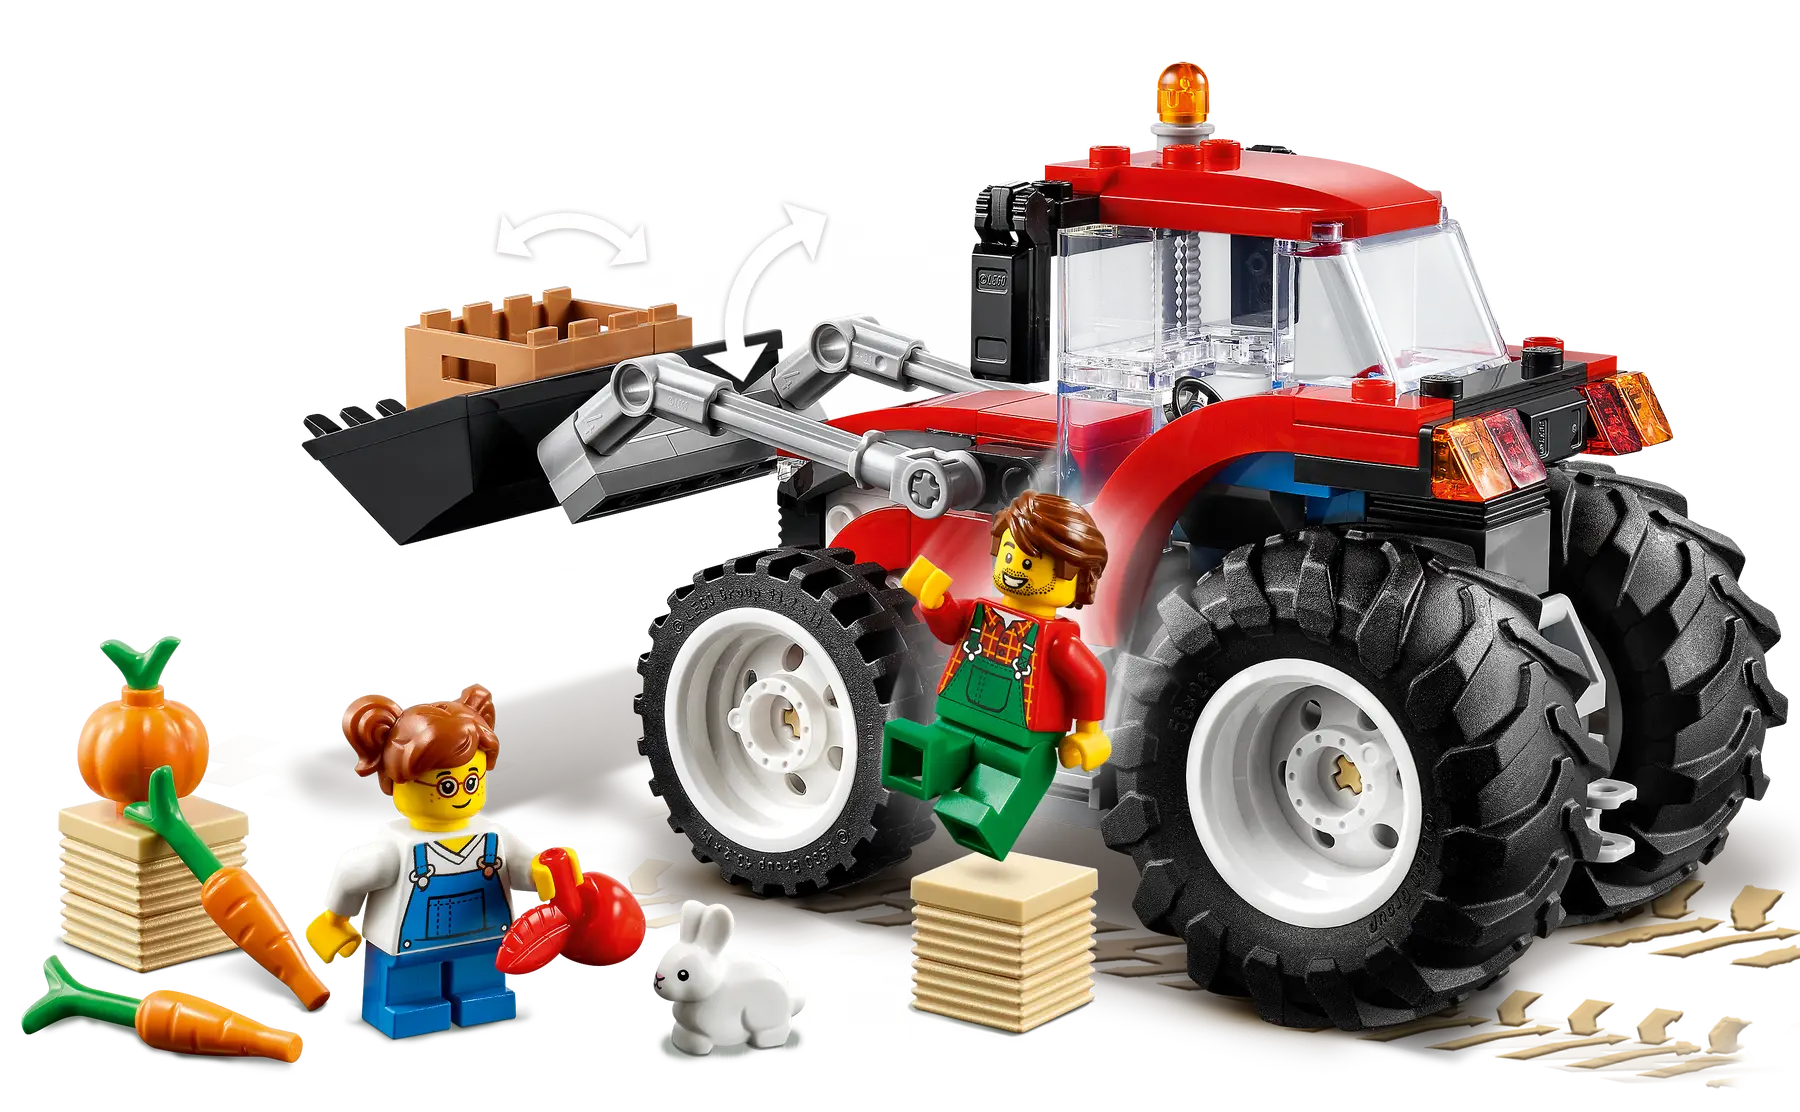 Lego City - Tractor